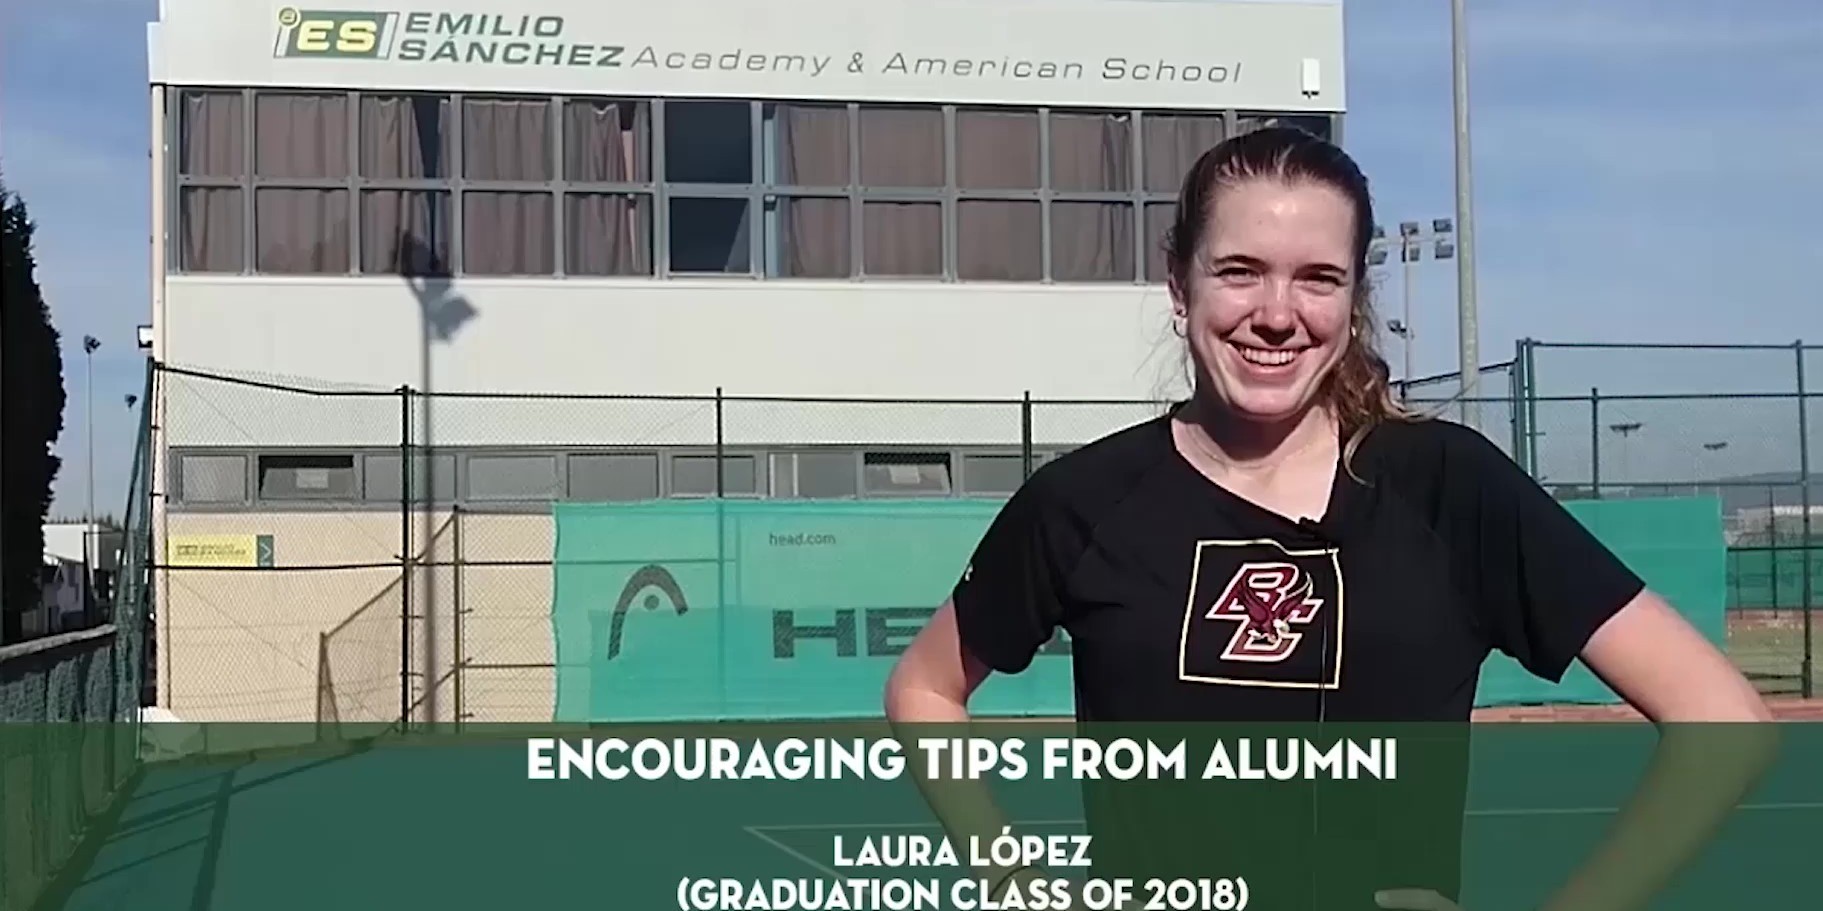 Consejos motivadores de alumni. Laura Lopez.